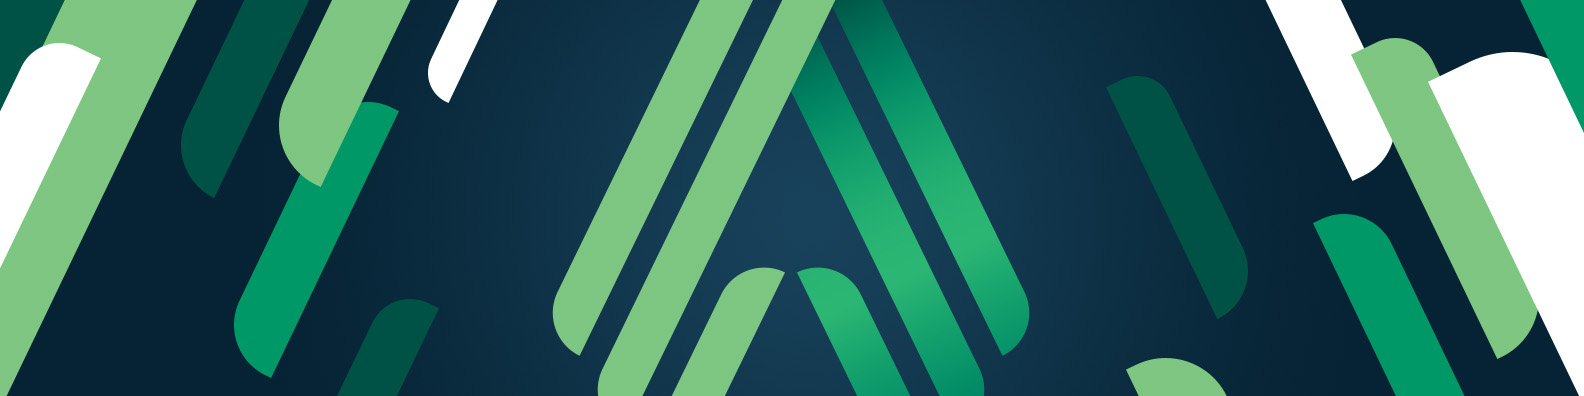 Logo for Altasciences